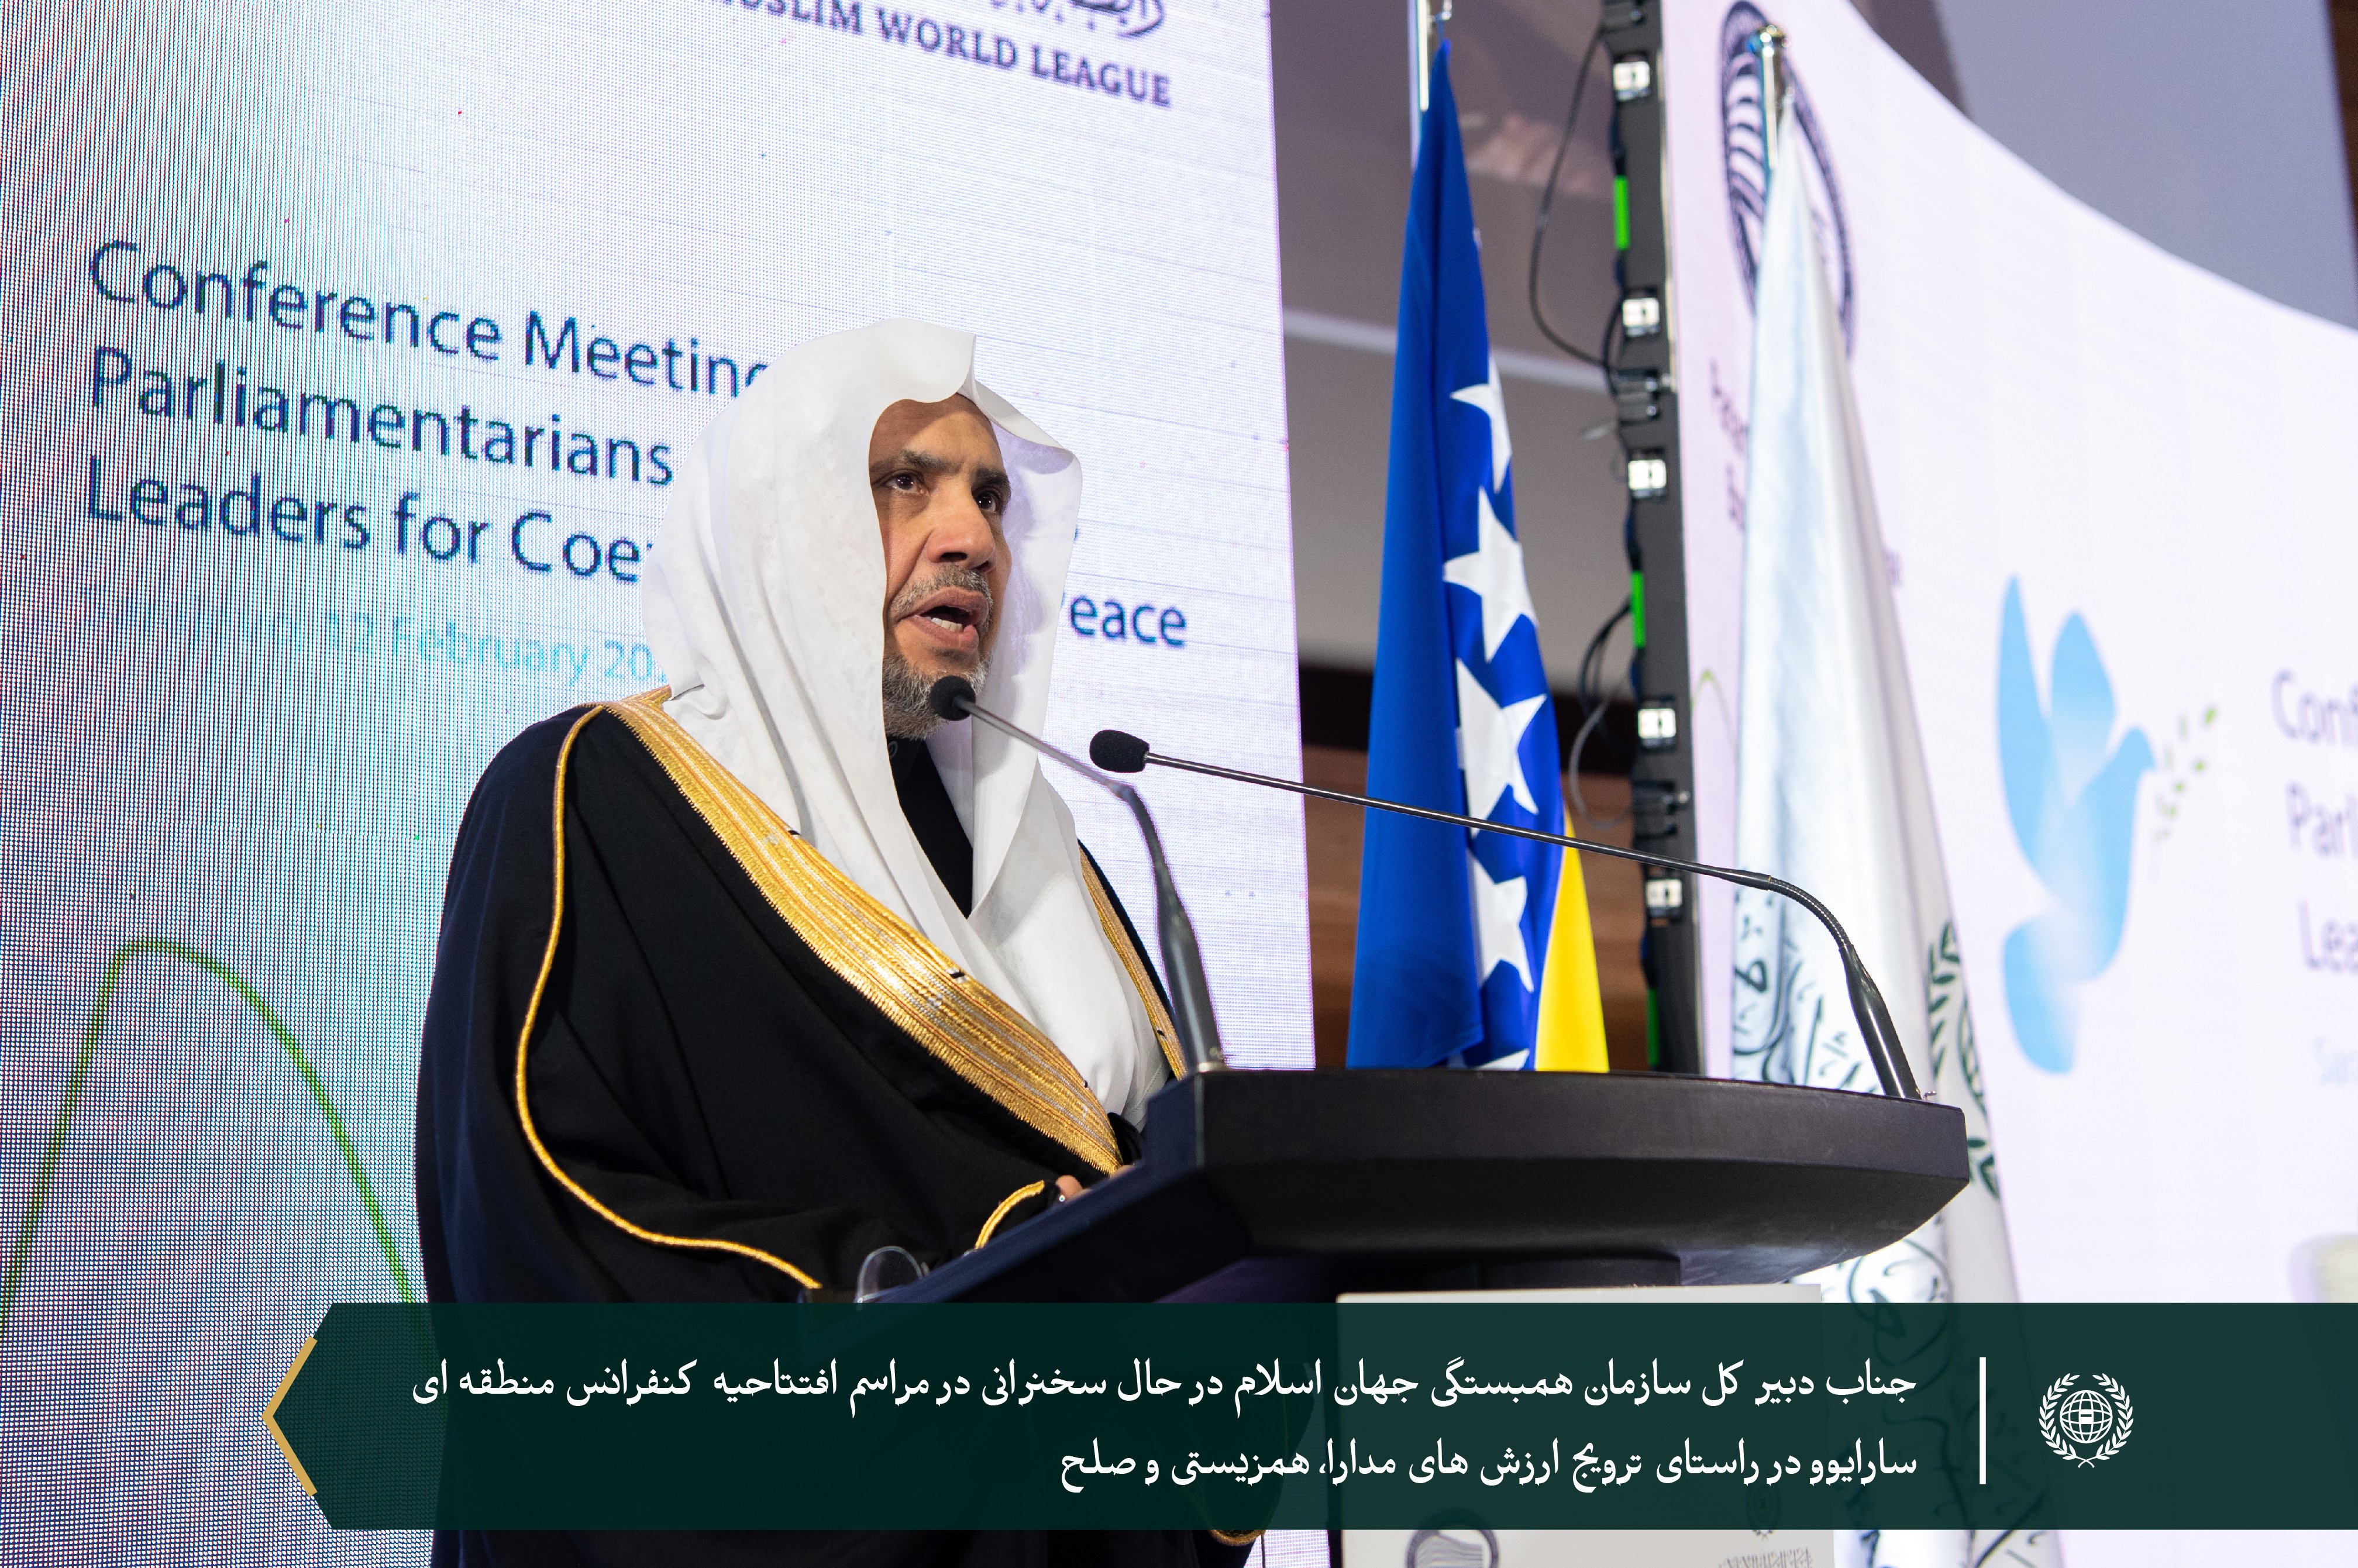 جناب دبیرکل سازمان همبستگی جهان اسلام و رئیس انجمن علمای مسلمان، آقای دکتر شیخ #محمد_العیسی در افتتاحیه کنفرانس منطقه‌ای که به تقویت و ترویج ارزش‌های همزیستی و صلح به‌ویژه با توجه به تغییرات ژئوپلیتیک بین‌المللی